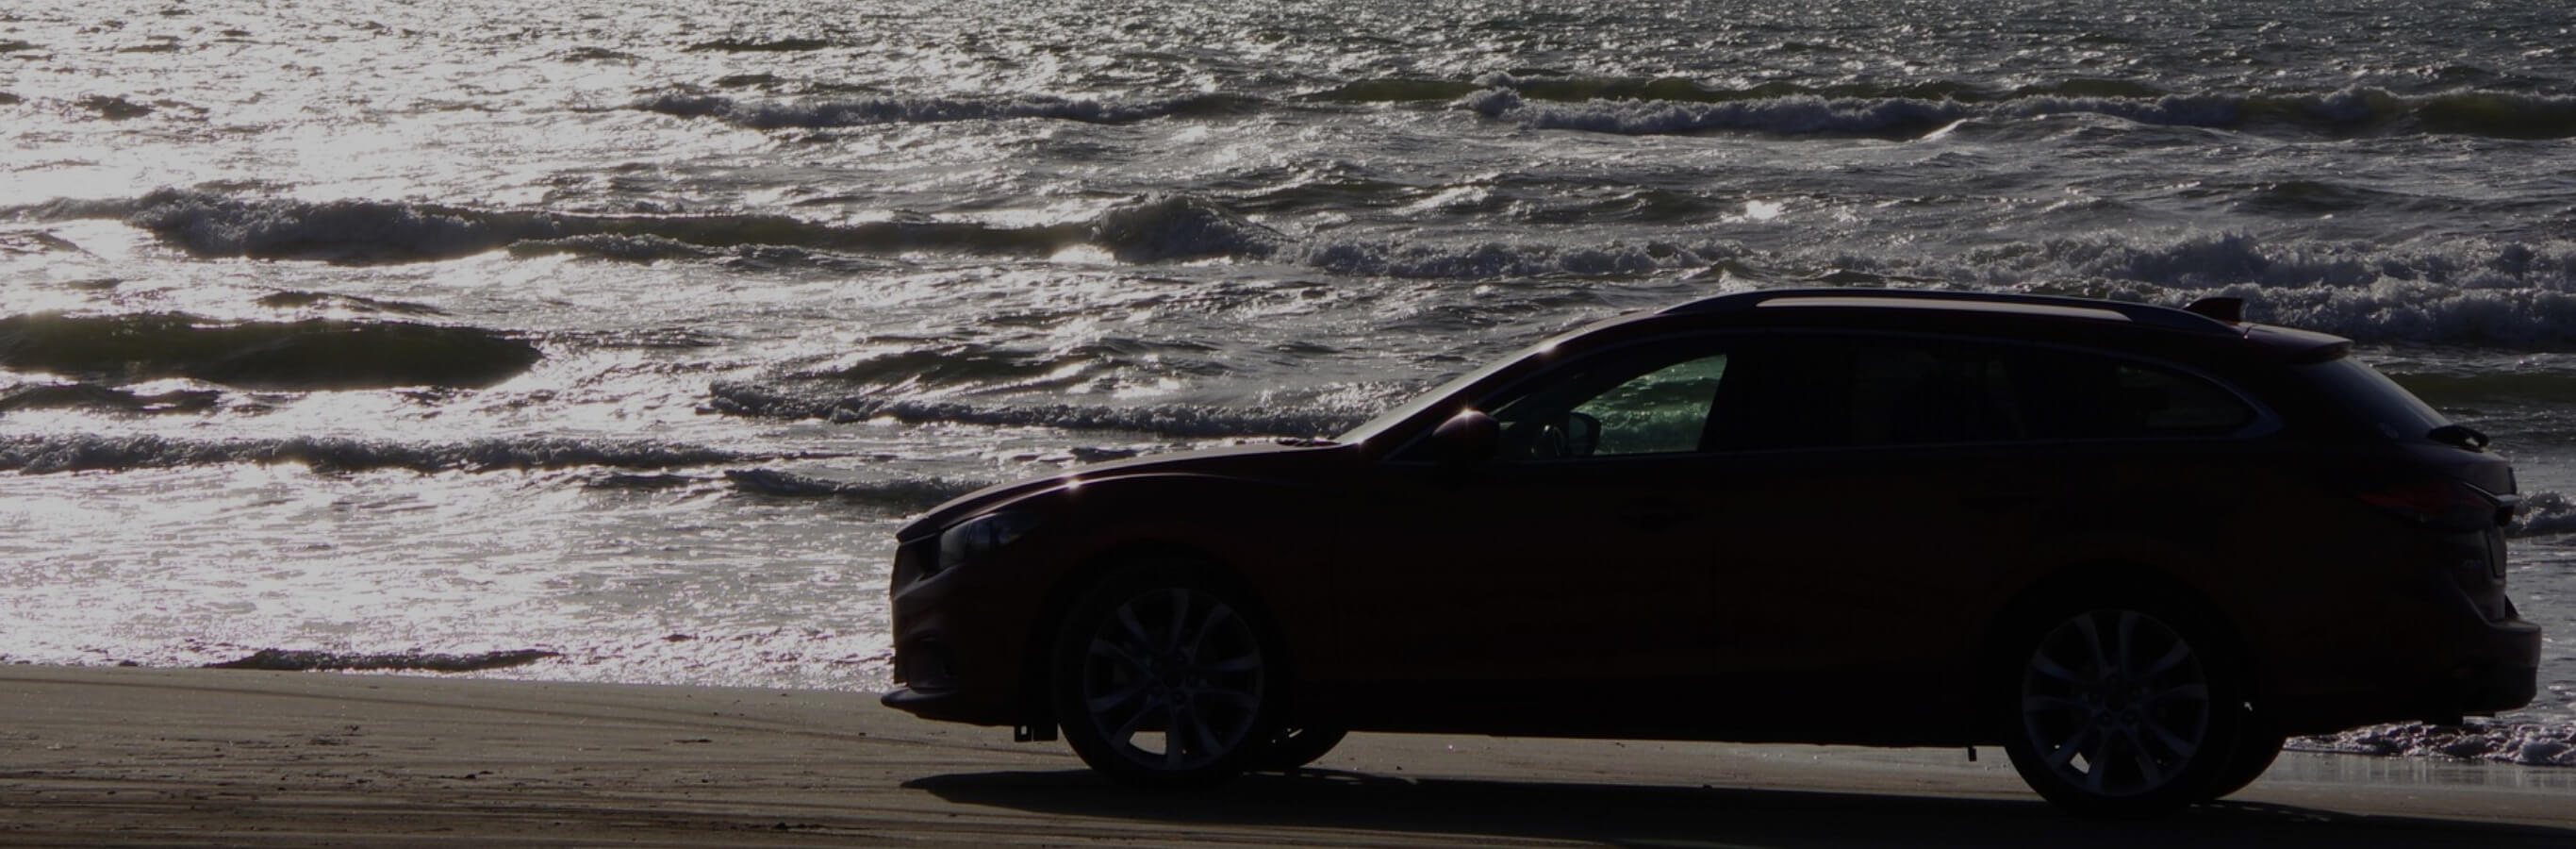 車が海辺を走っている写真